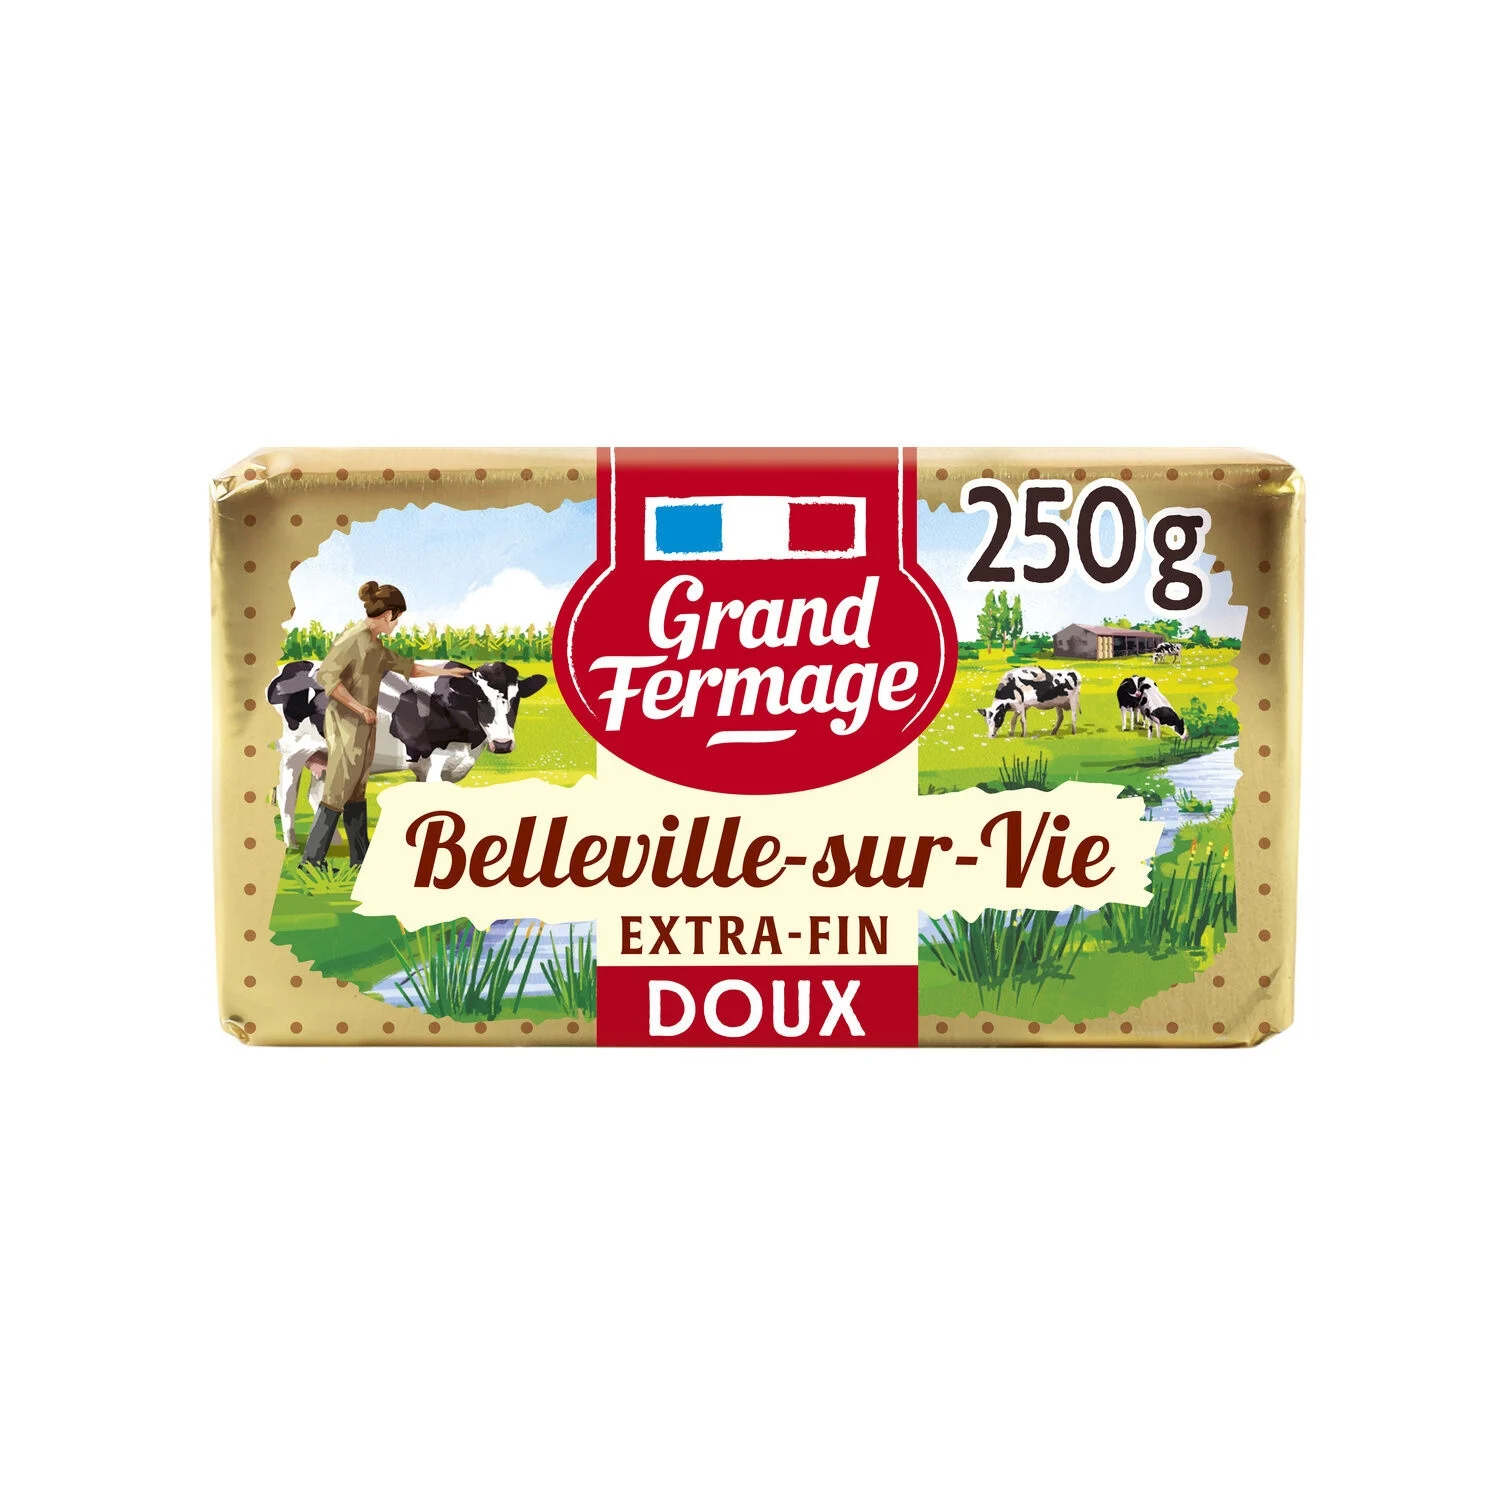 Beurre Doux Extra-fin De Belleville-sur-vie 250g - Grand Fermage